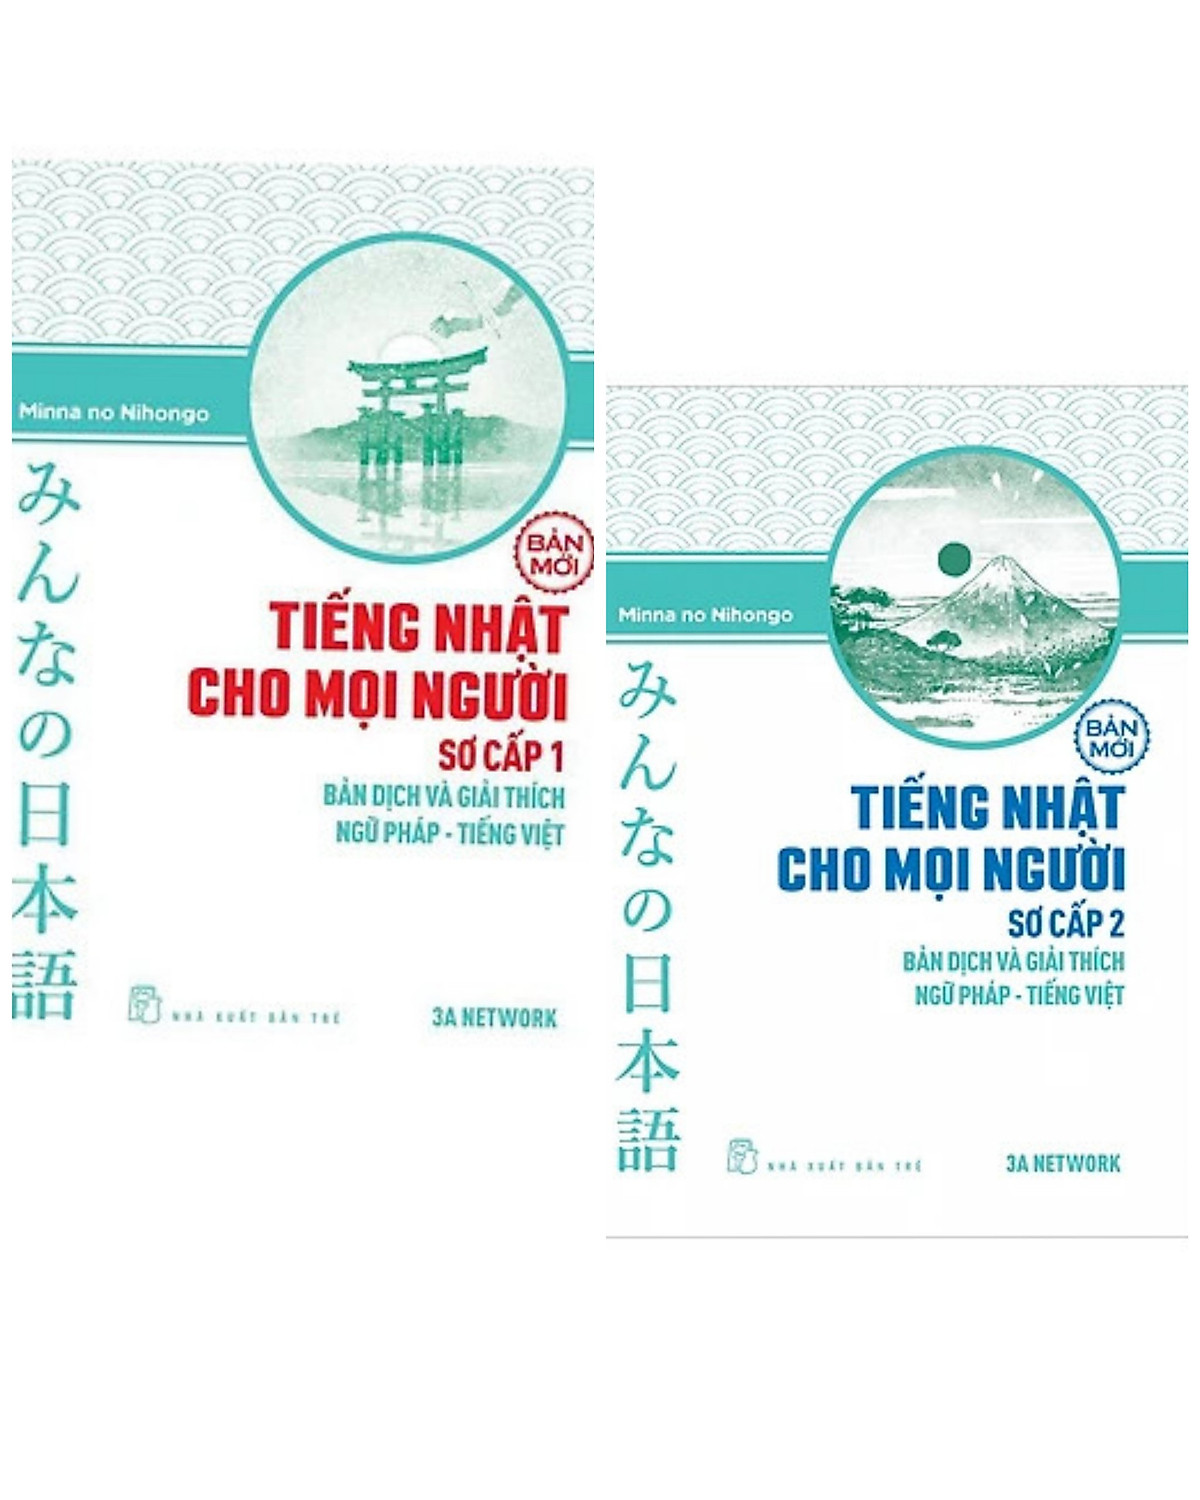 Combo học tốt tiếng Nhật: Tiếng Nhật Cho Mọi Người - Sơ Cấp 1 - Bản Dịch Và Giải Thích Ngữ Pháp - Tiếng Việt (Bản Mới) + Tiếng Nhật Cho Mọi Người - Sơ Cấp 2 - Bản Dịch Và Giải Thích Ngữ Pháp - Tiếng Việt (Bản Mới)